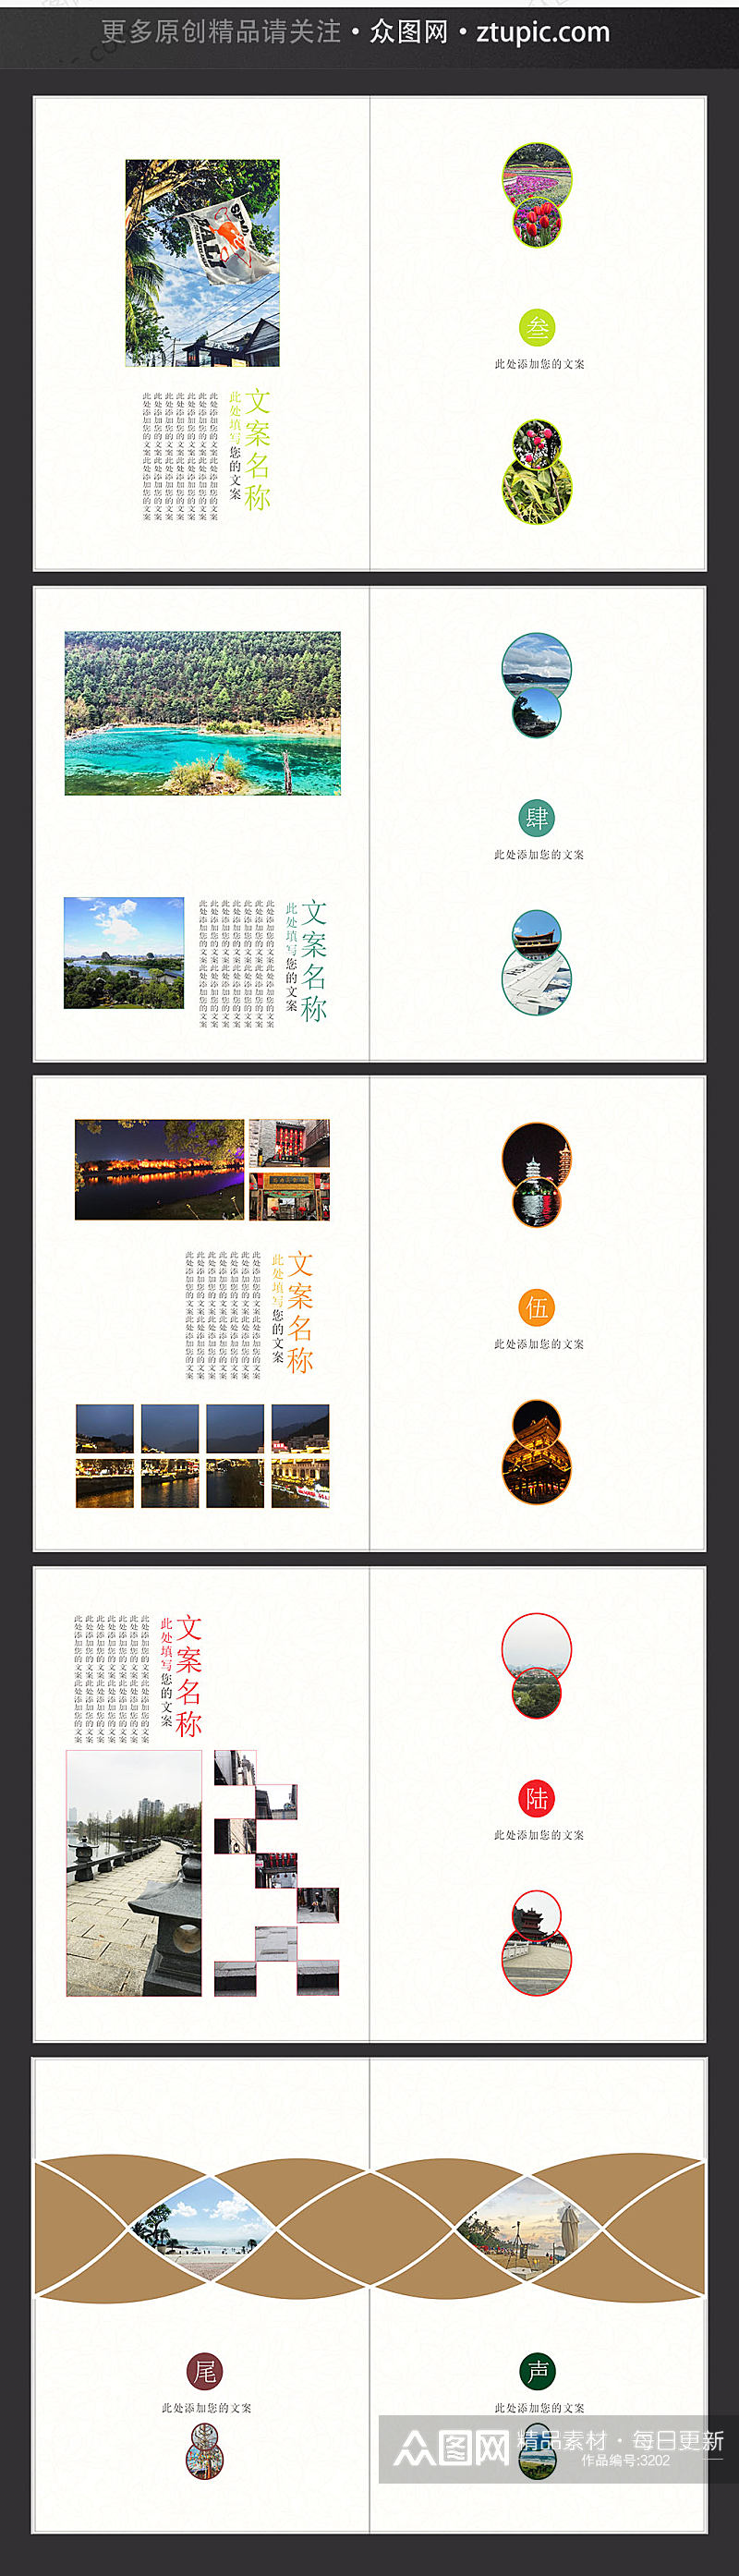 唯美时尚中国风产品画册封面素材